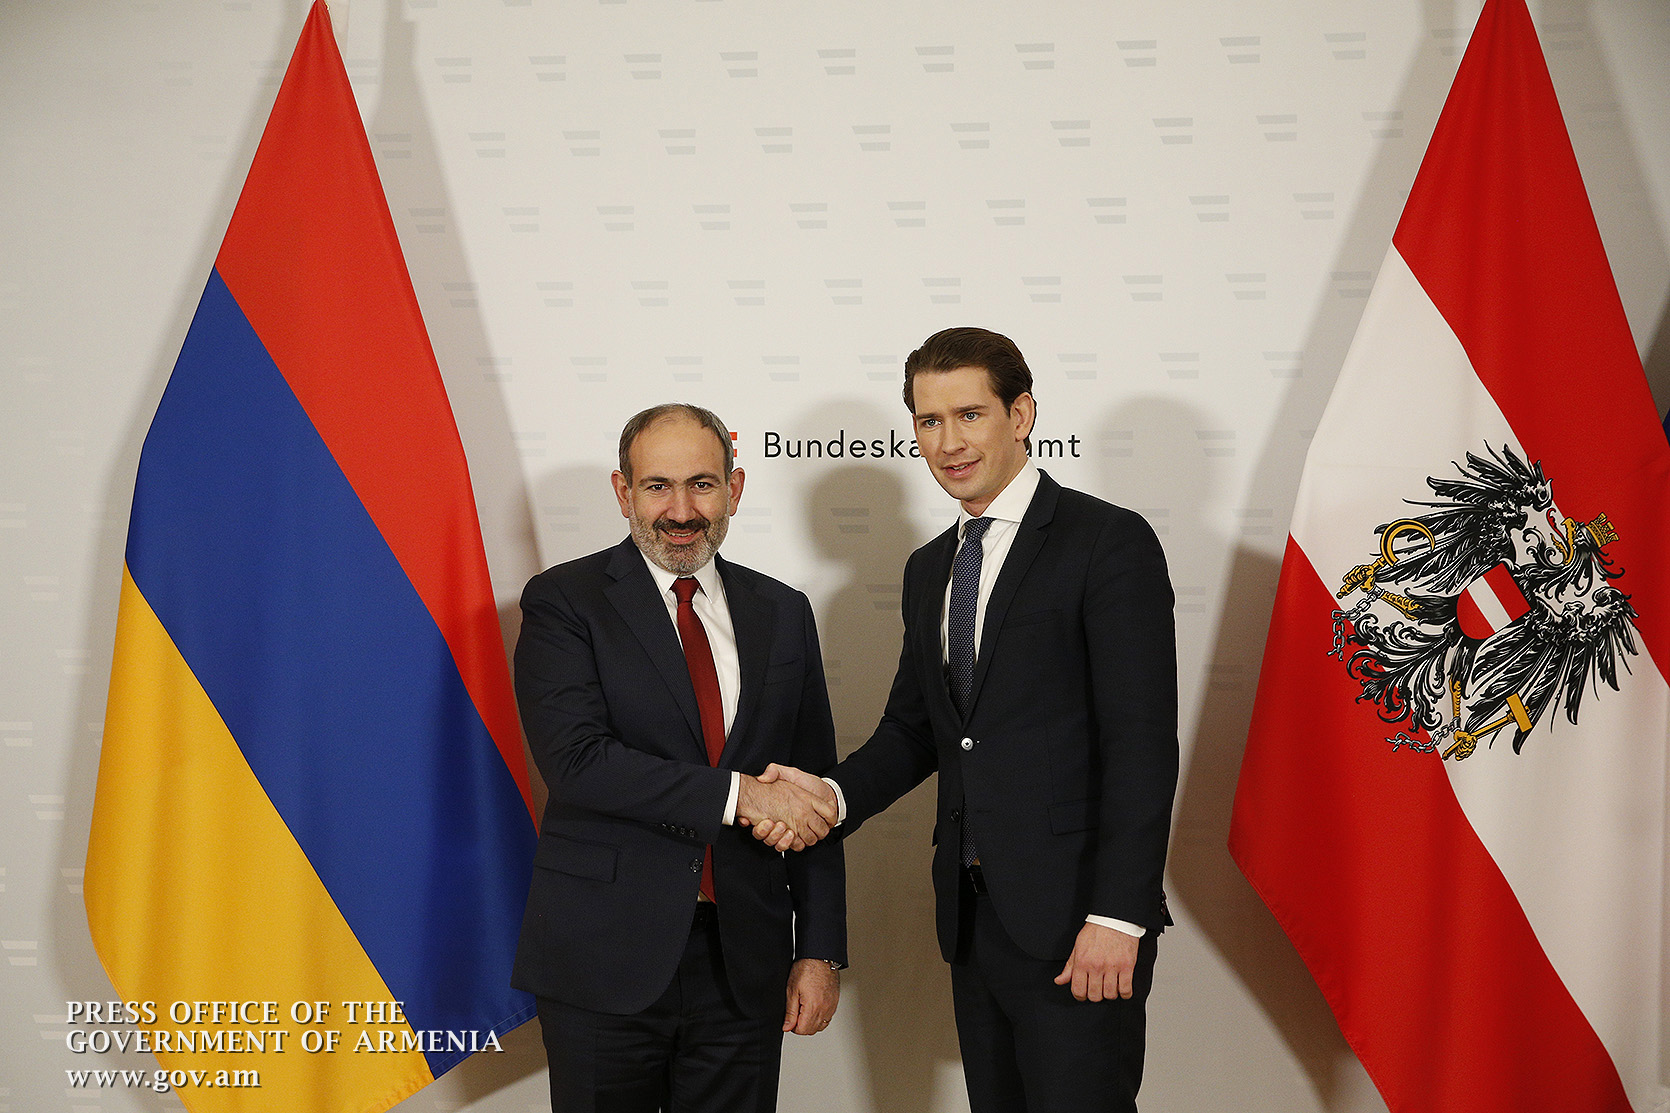 Նիկոլ Փաշինյանը և Սեբաստիան Կուրցը քննարկել են հայ-ավստրիական հարաբերությունները